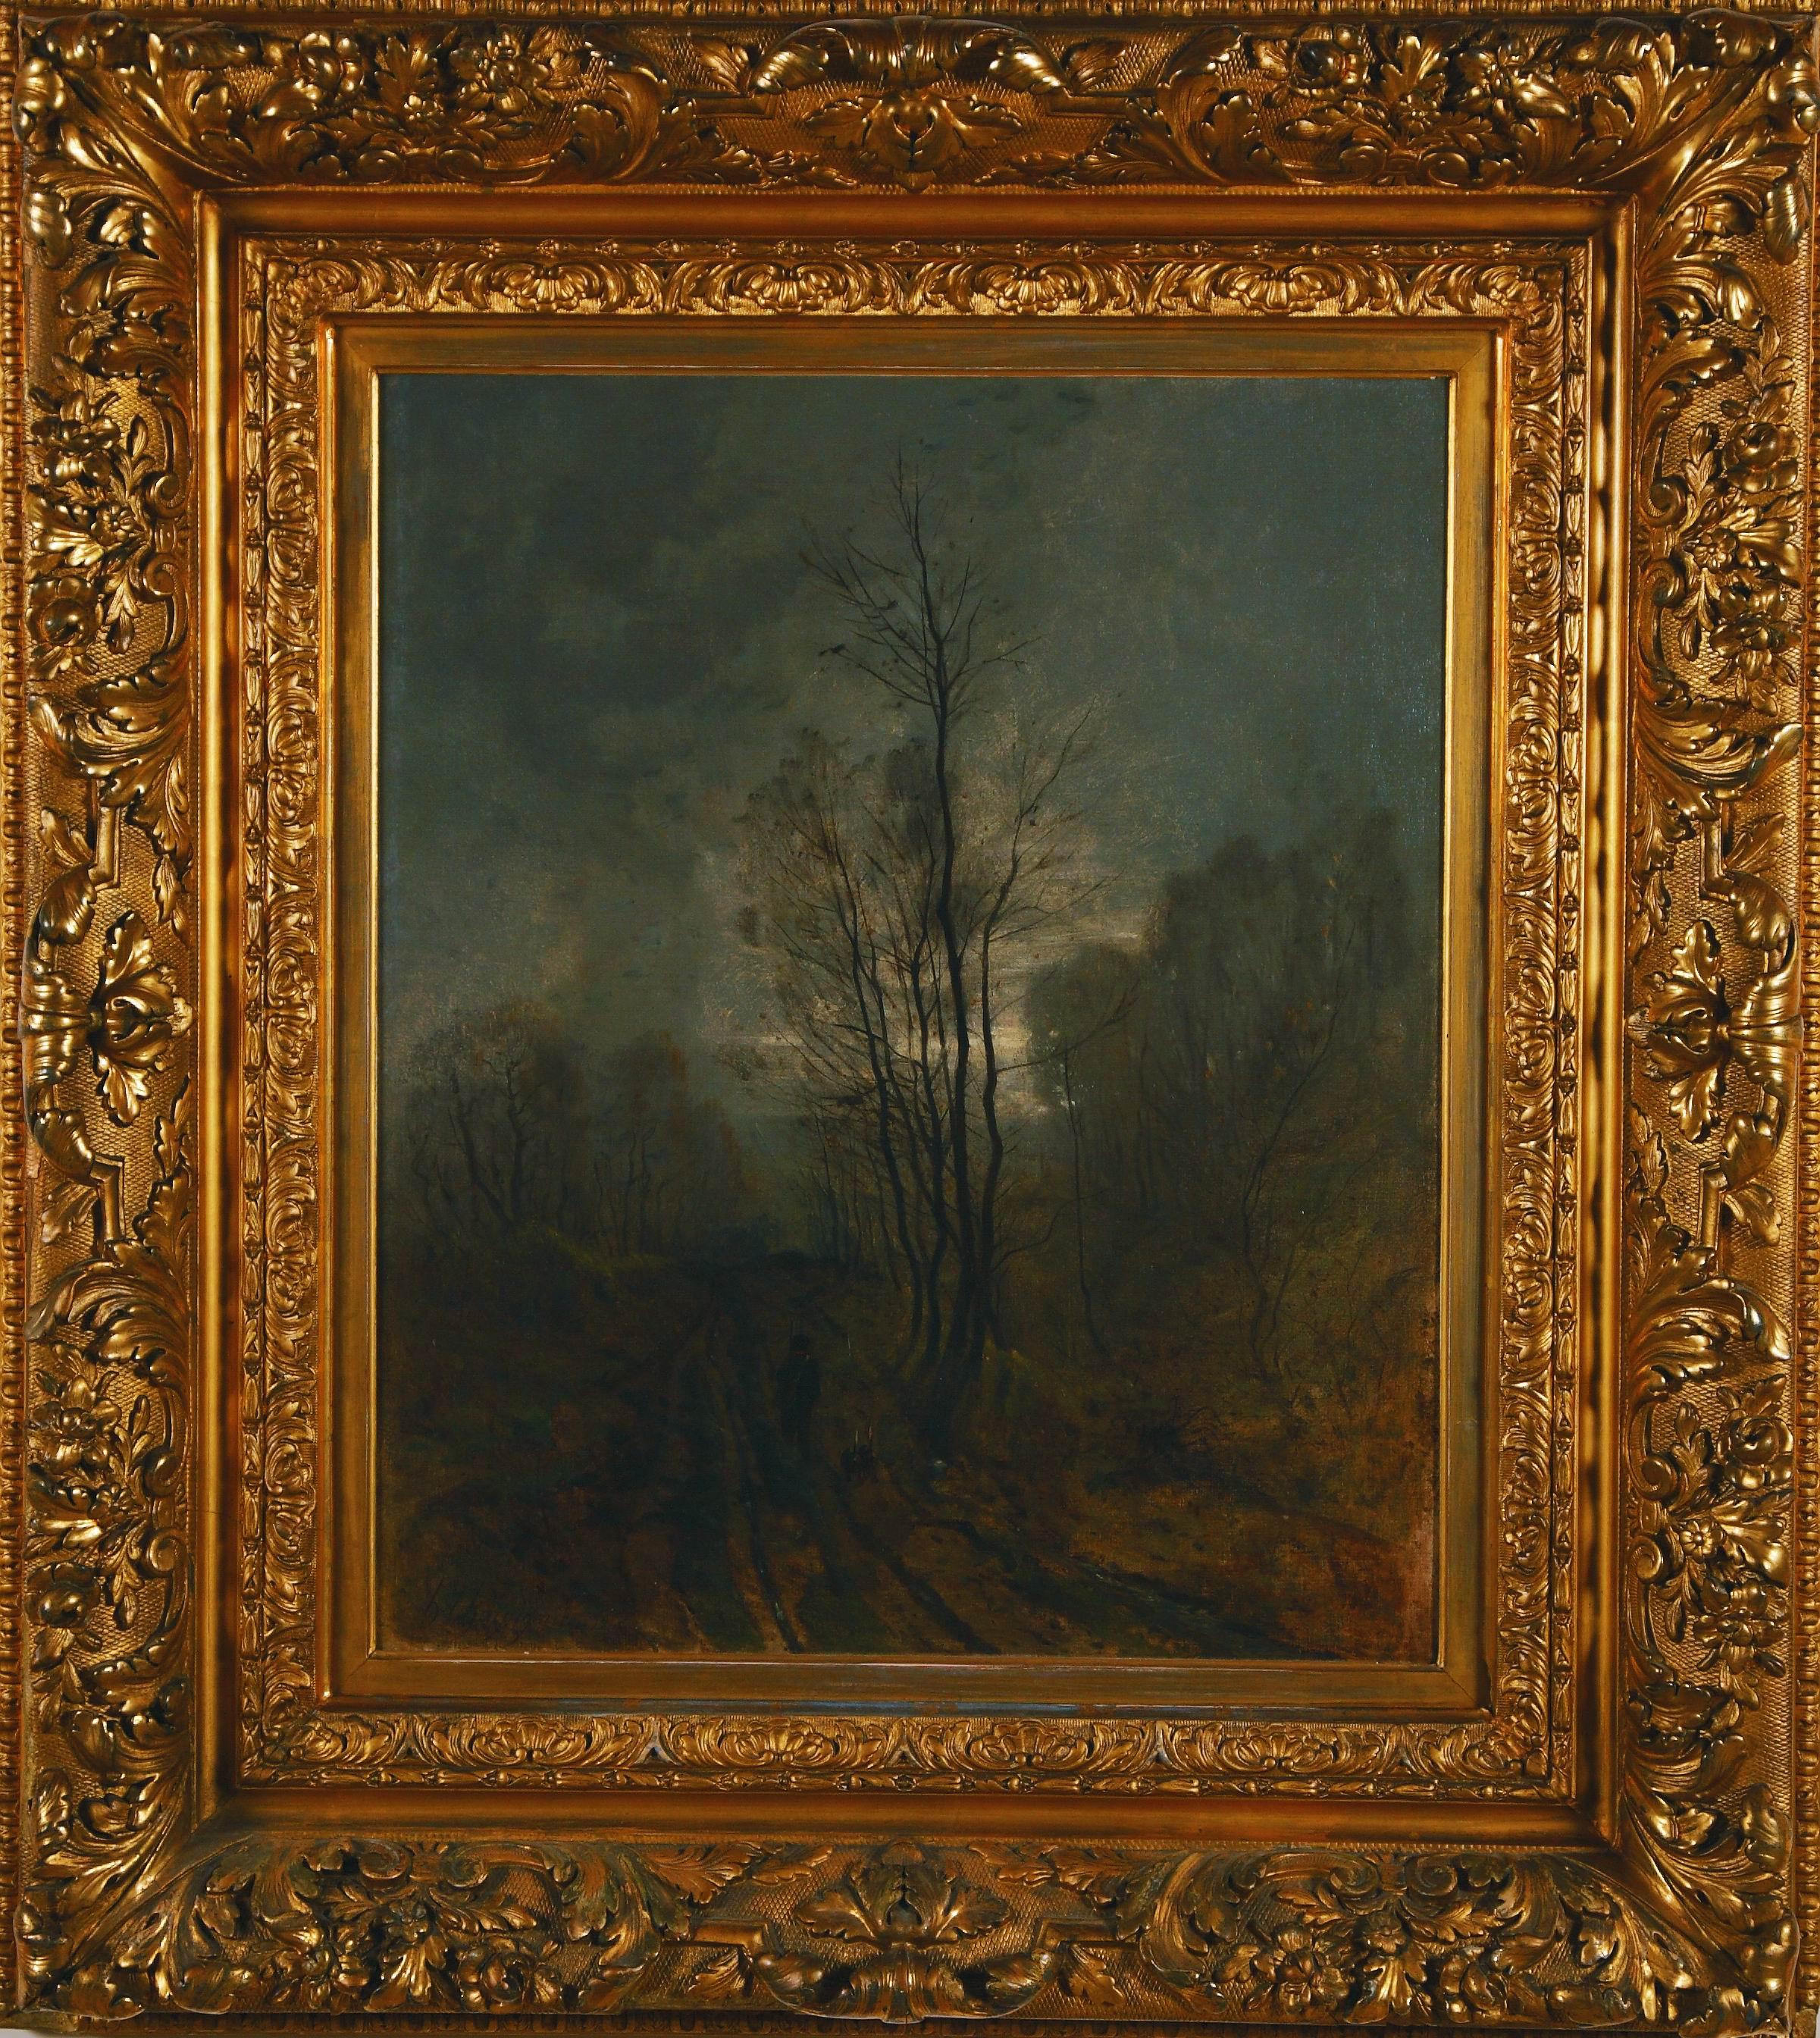 Original Harpignies oil painting "Landscape at Twilight